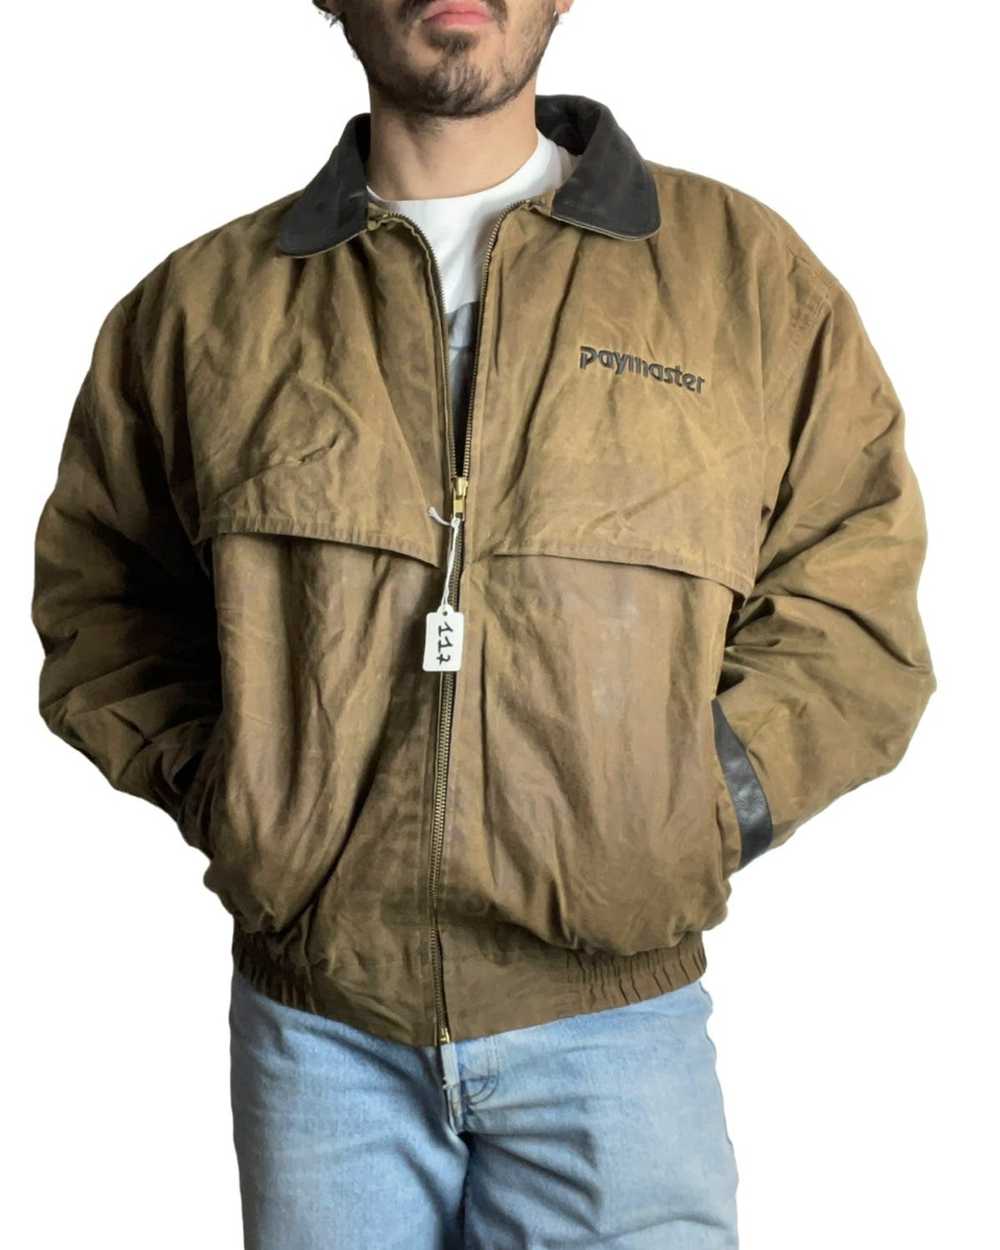 Vintage Worker vintage jacket - image 1